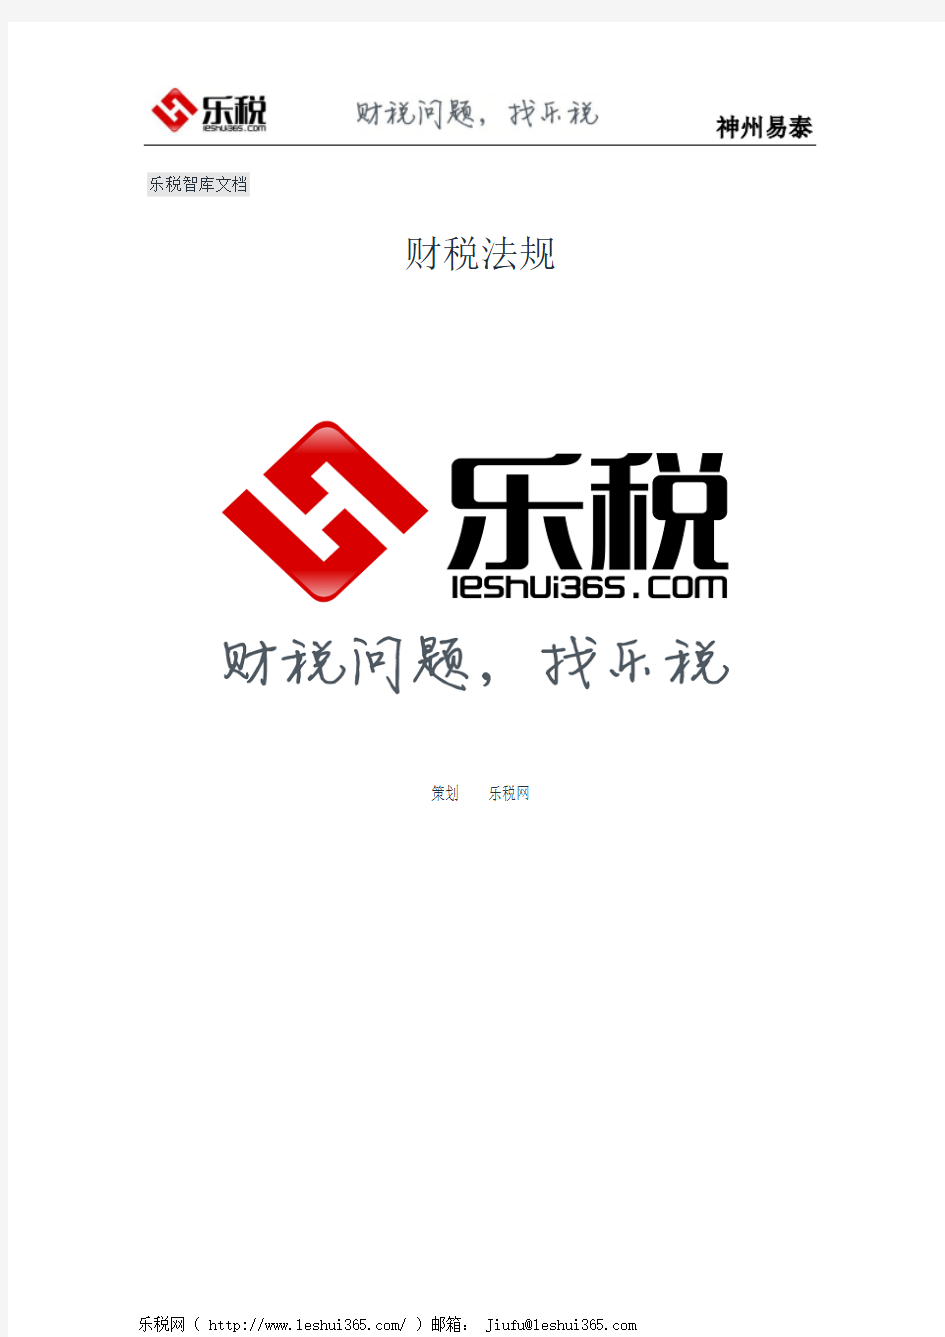 黑龙江省地方税务局关于印发《印花税核定征收管理办法》的通知